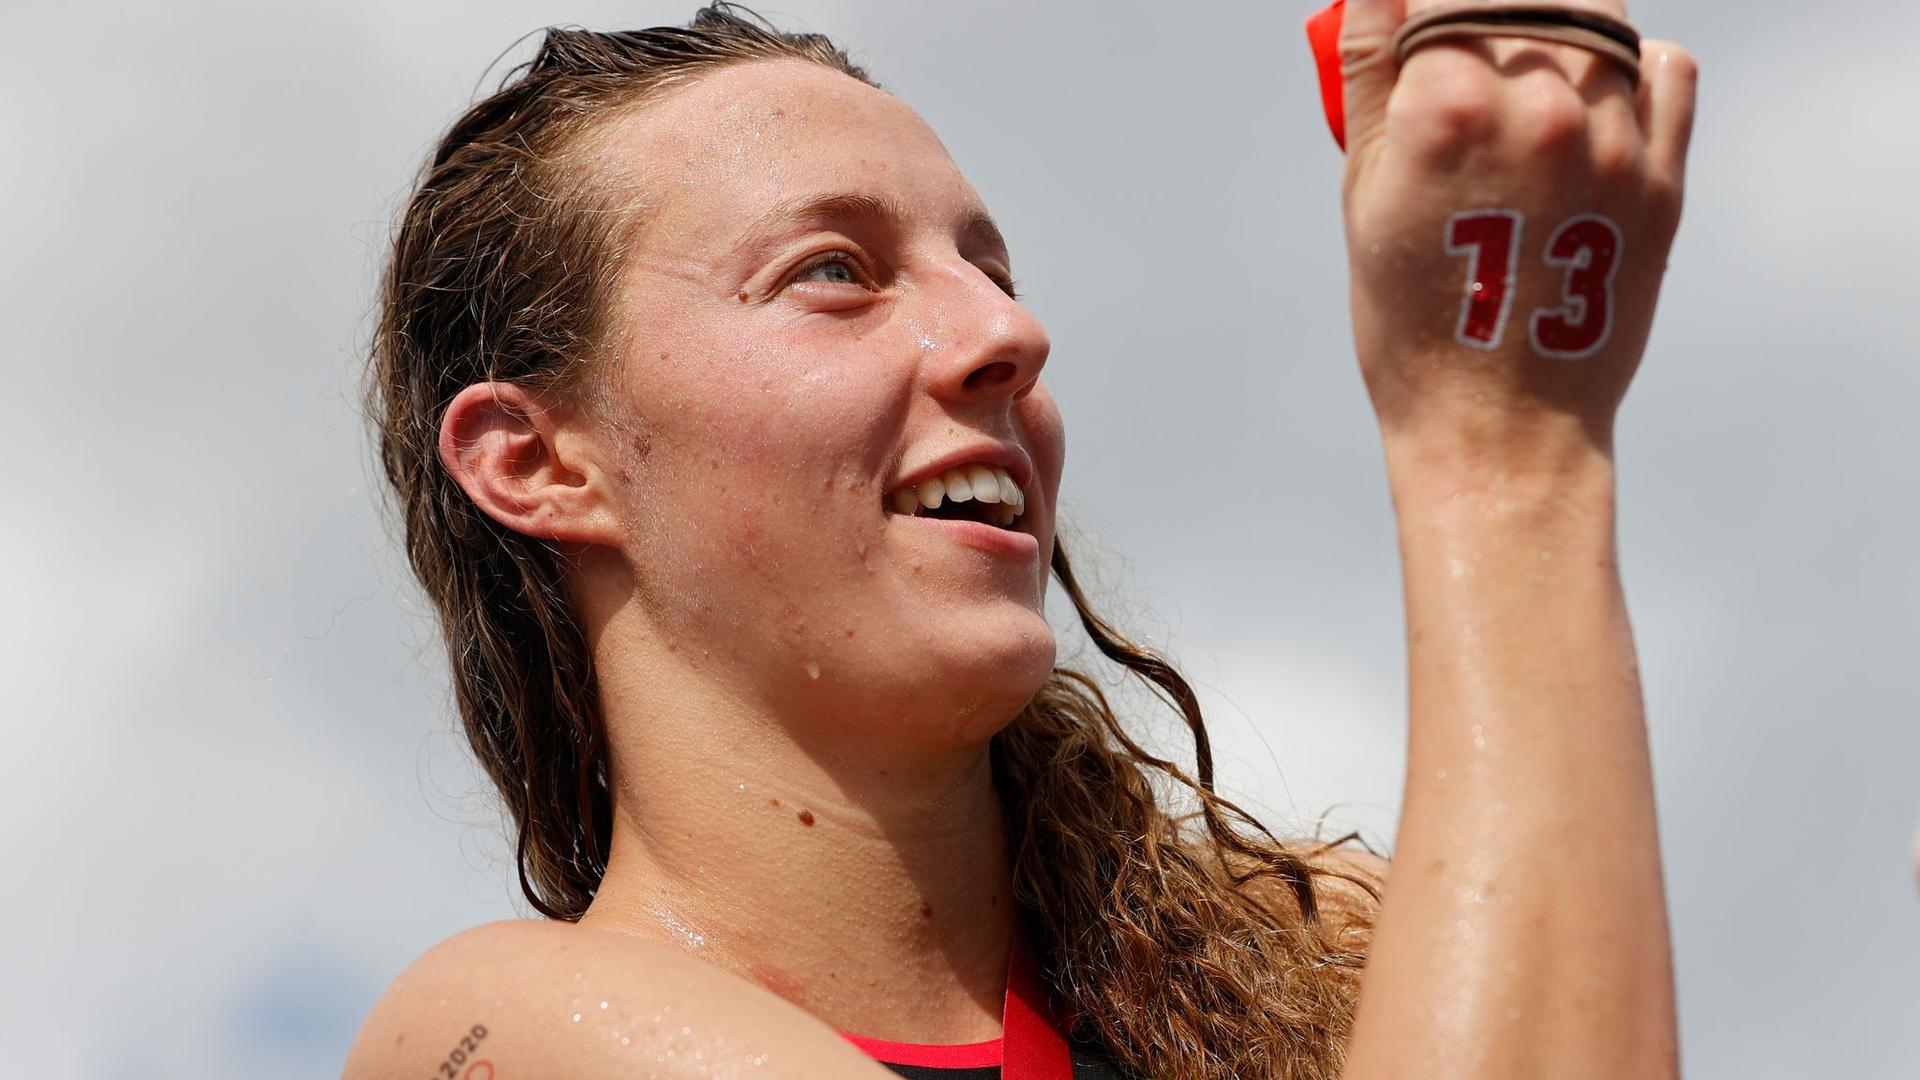 Freiwasserschwimmerin Leonie Beck ist mit ihrem fünften Platz zufrieden.